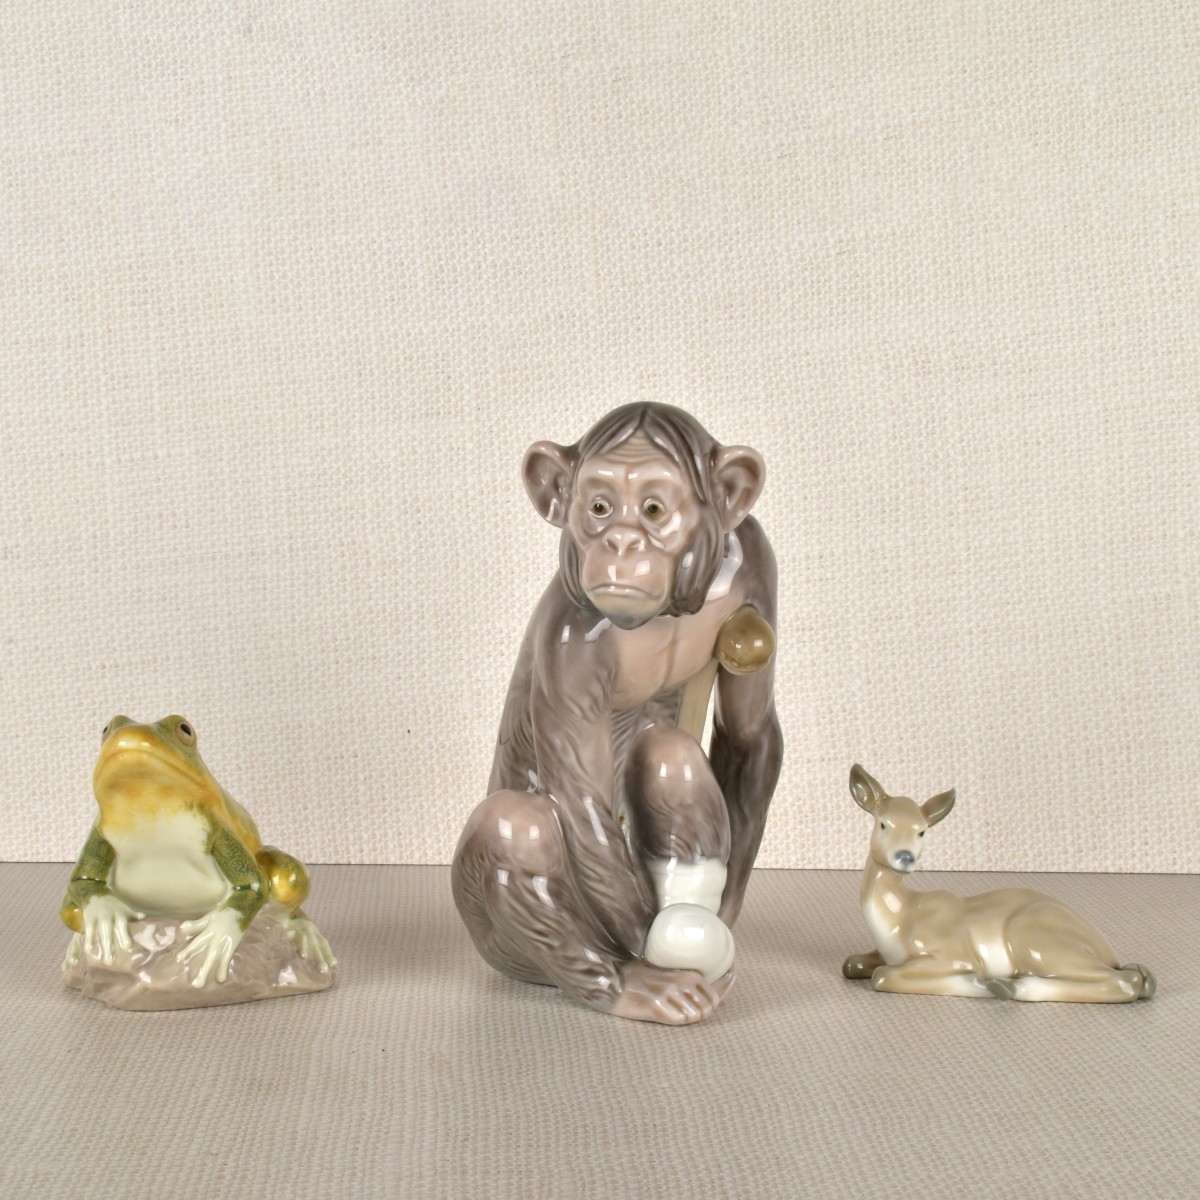 Three Lladro Porcelain Animal Figurines